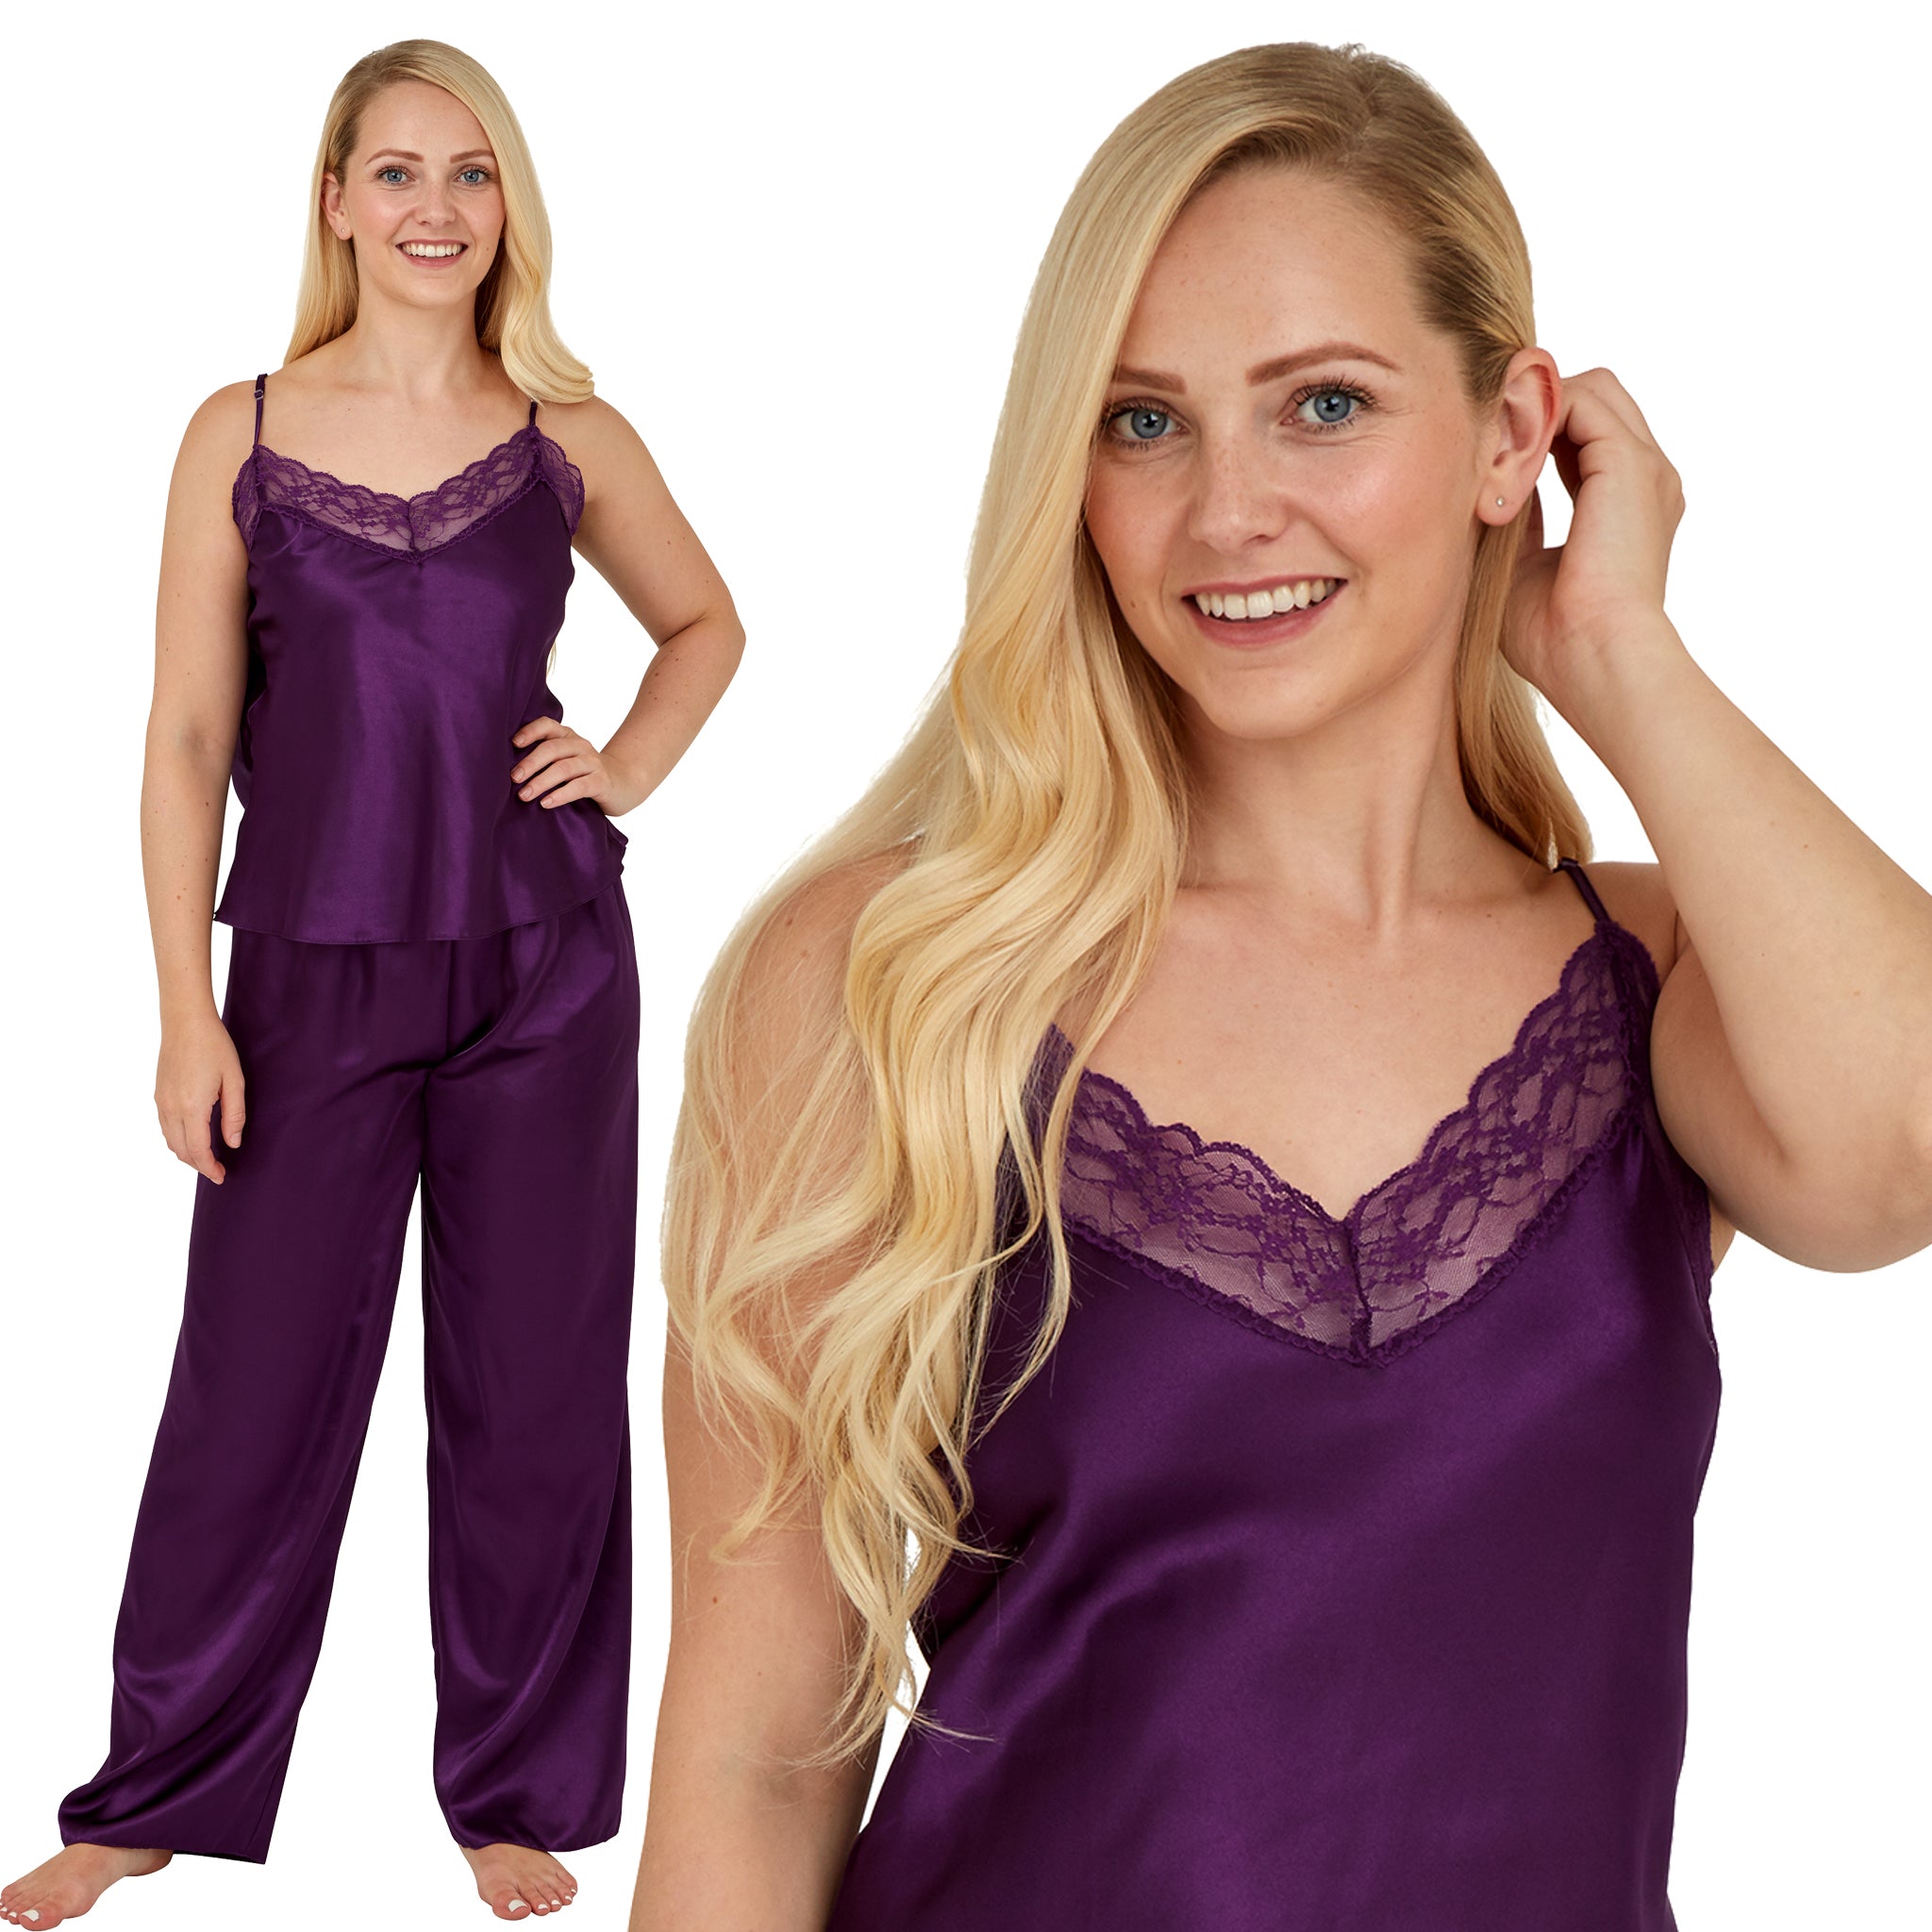 Women Satin Lace Trim Pajamas Set Ladies Cami Top Shorts Nightwear Sleepwear